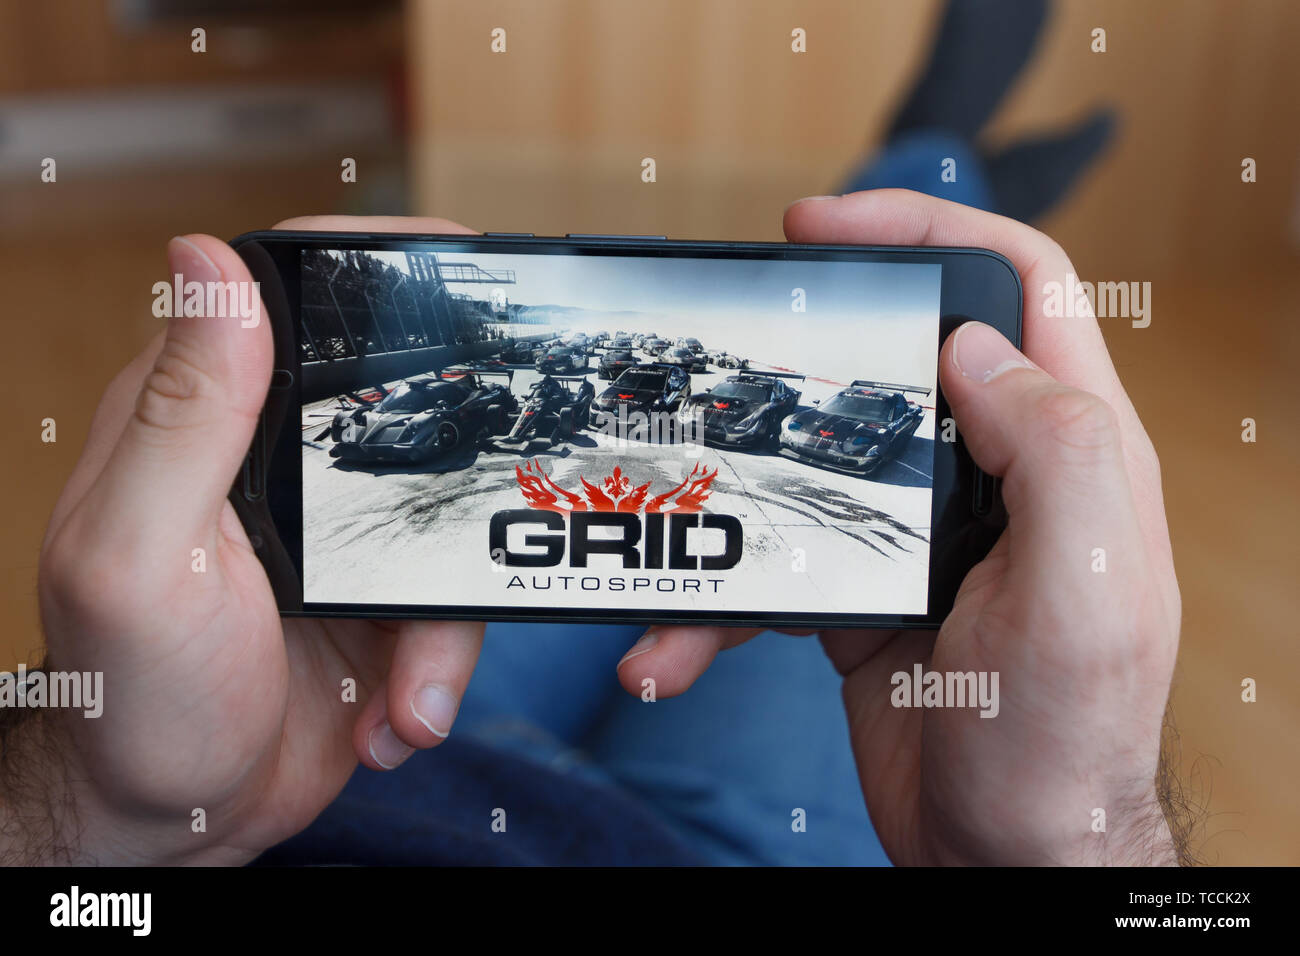 LOS ANGELES, Kalifornien - Juni 3, 2019: Lügen Mann hält ein Smartphone und Spielen der GRID Autosport Spiel auf den Bildschirm des Smartphones. Eine illustrative e Stockfoto